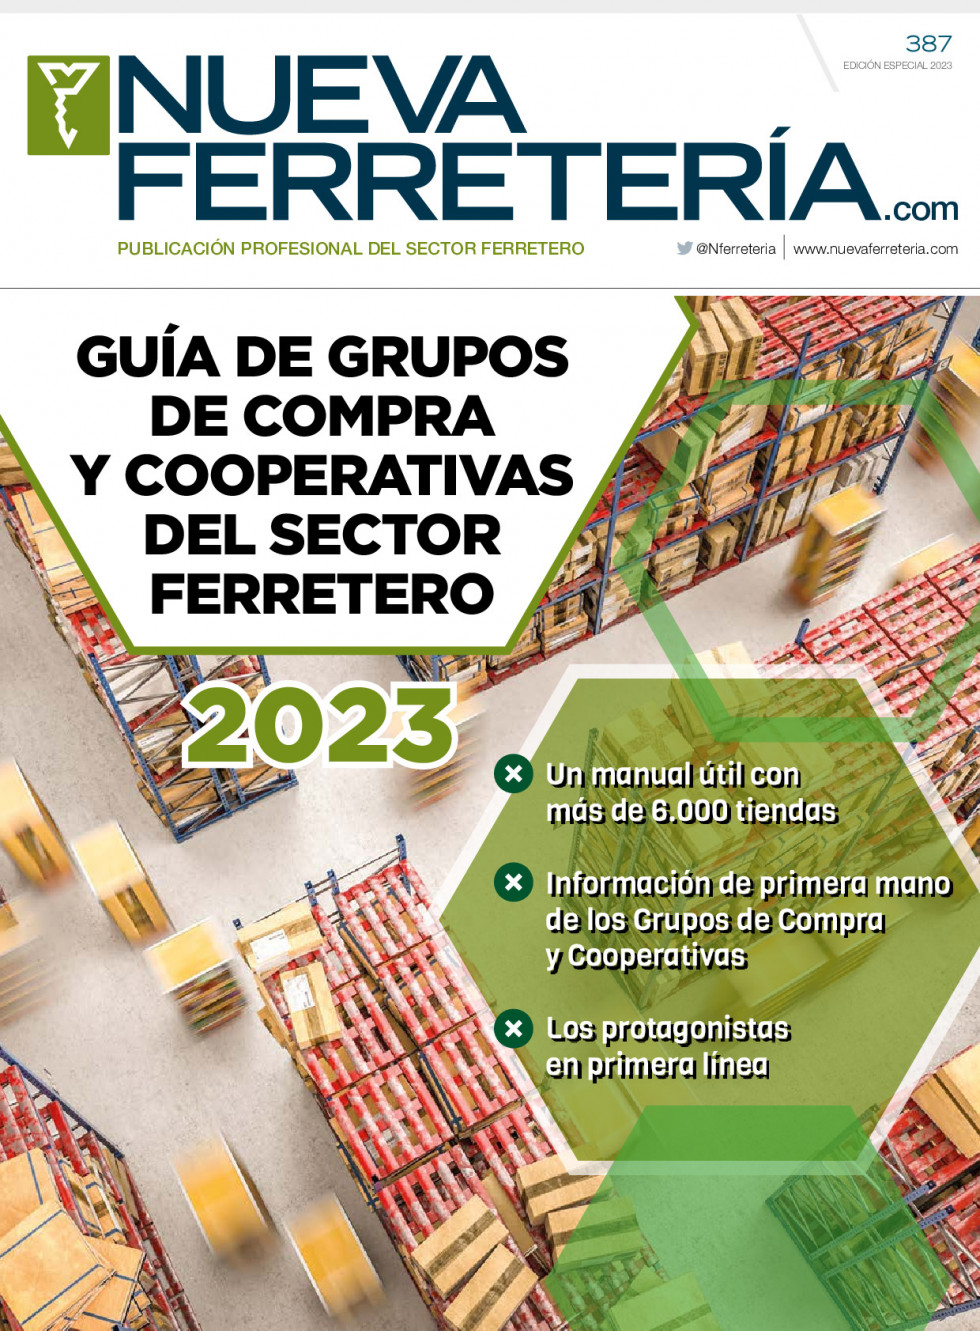 Ferreteria387 3